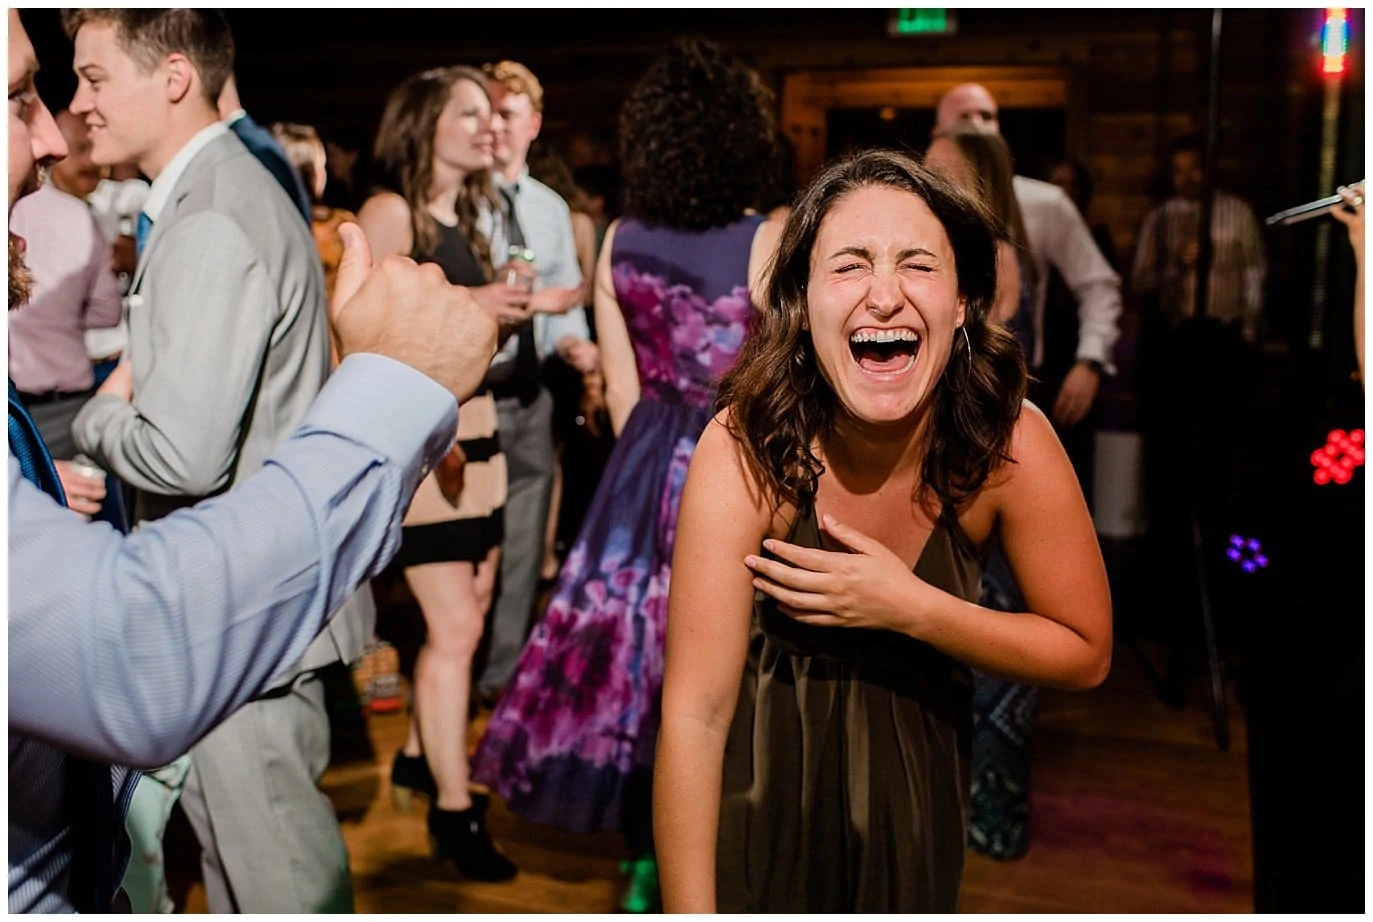 fun dances Colorado wedding reception photo